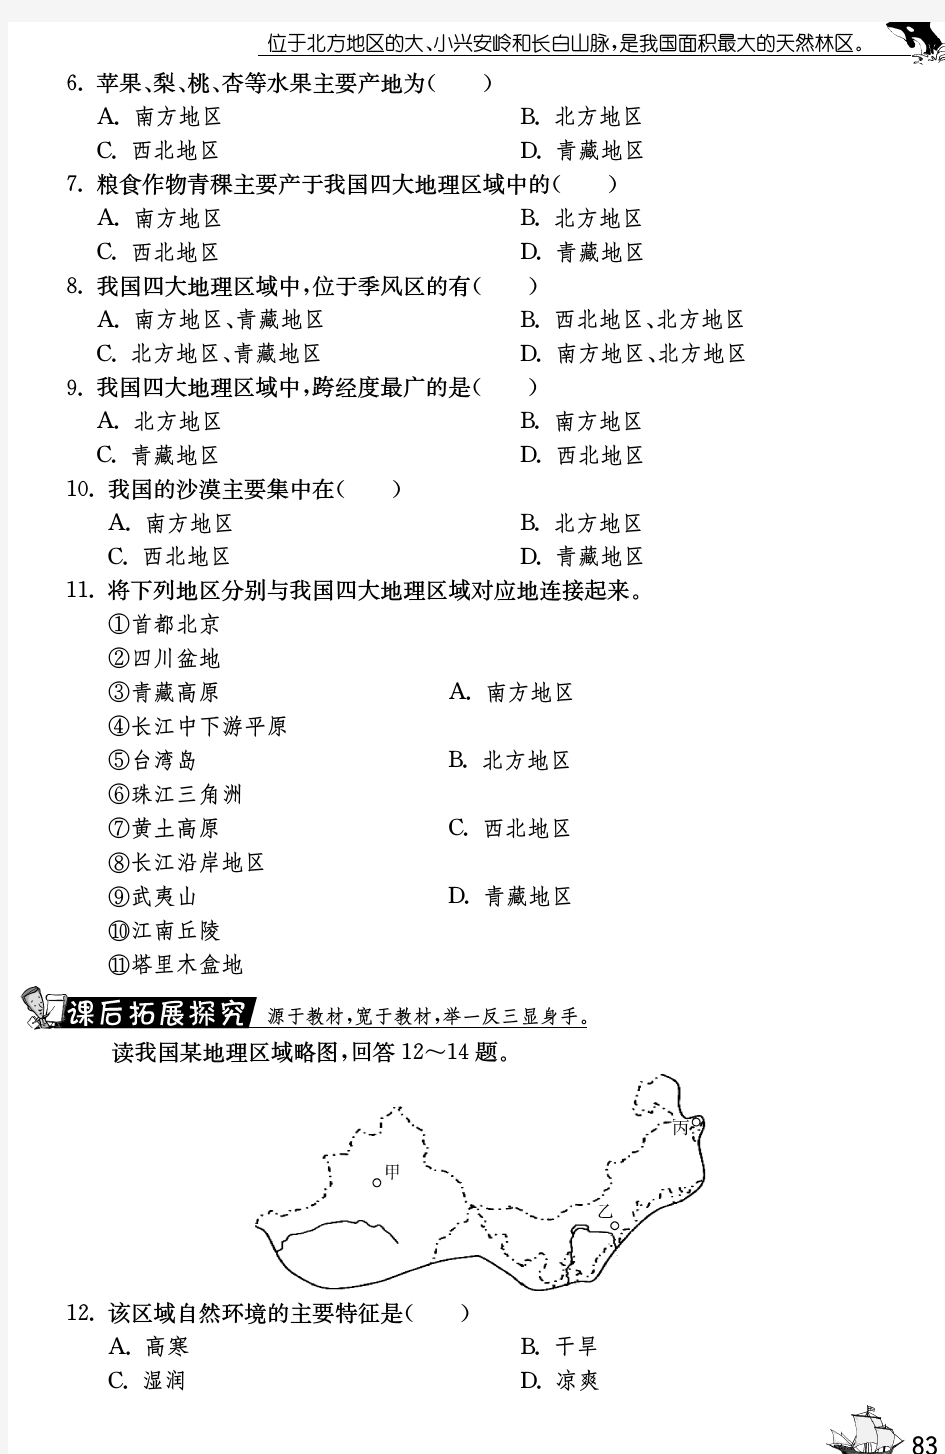 【一课三练】七年级地理下册 7.1.2 中国四大地理区域划分试题(pdf) 中图版